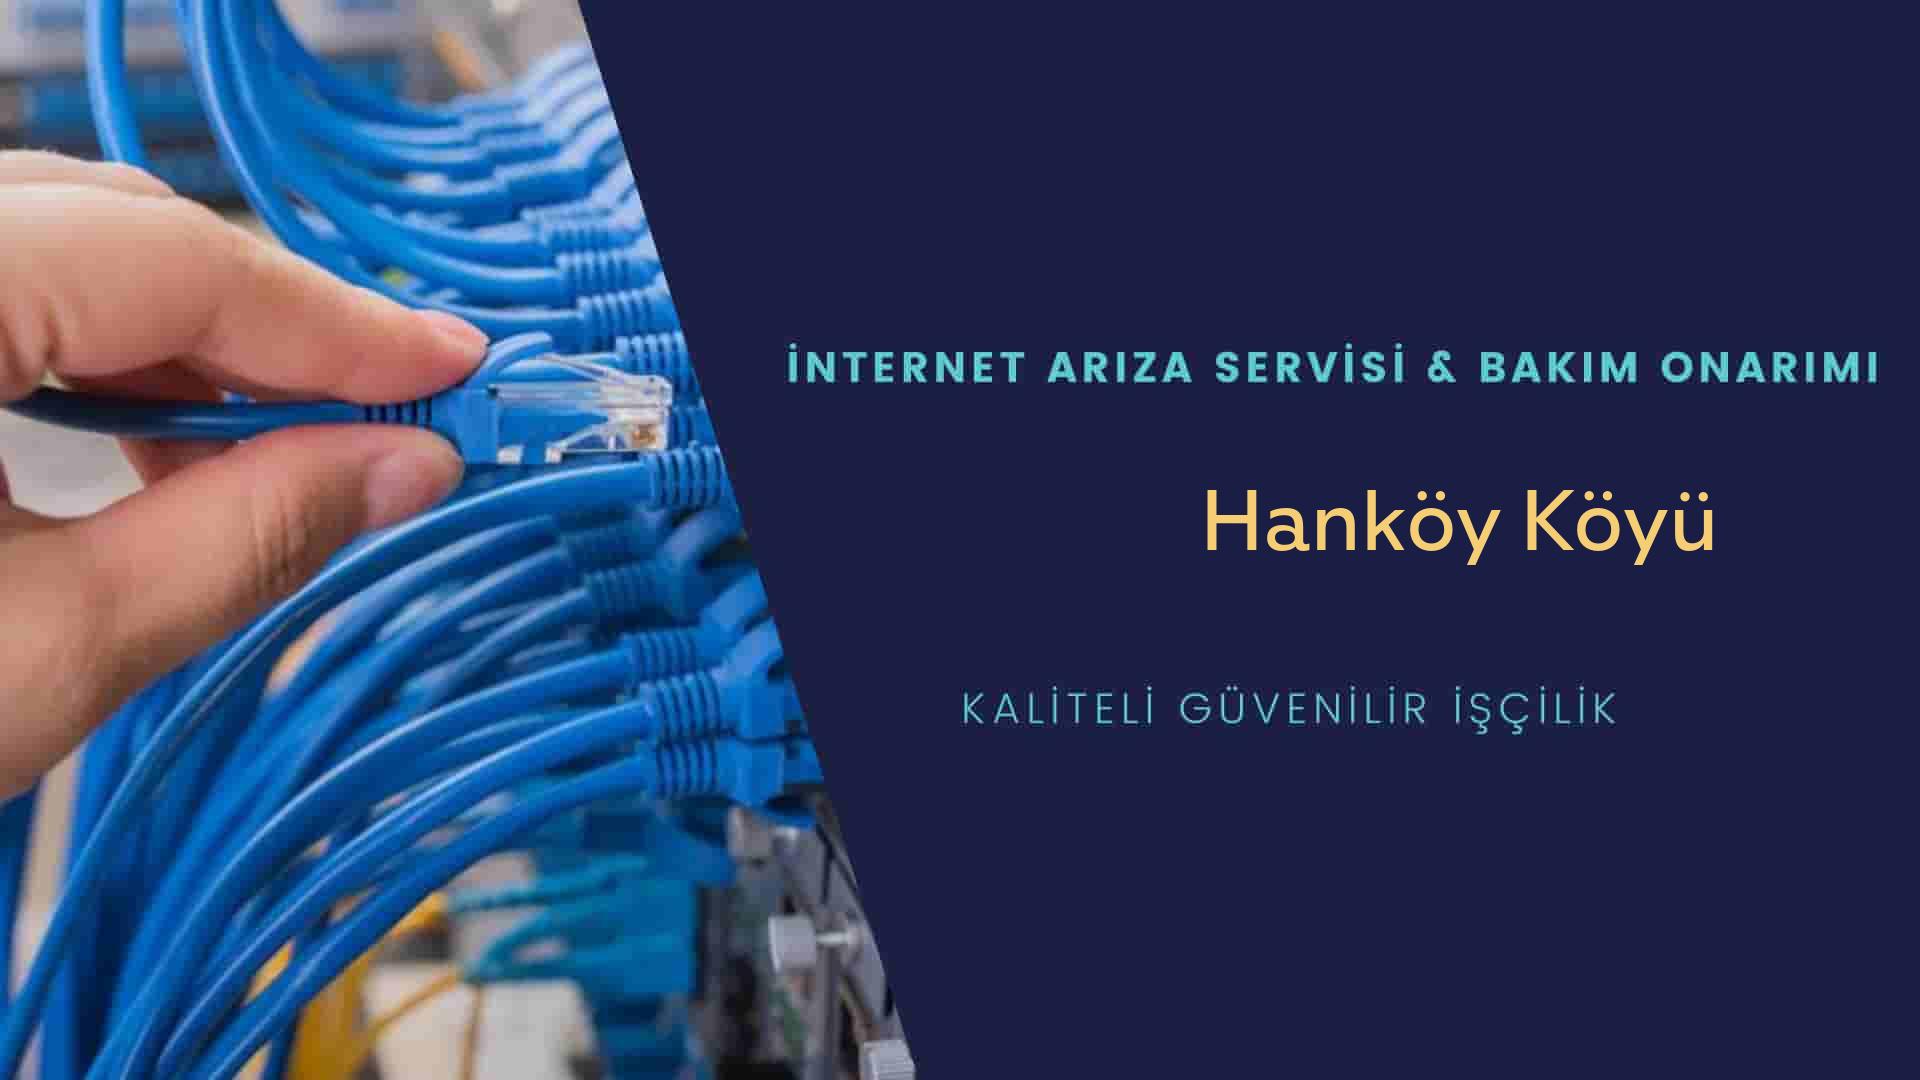 Hanköy Köyü internet kablosu çekimi yapan yerler veya elektrikçiler mi? arıyorsunuz doğru yerdesiniz o zaman sizlere 7/24 yardımcı olacak profesyonel ustalarımız bir telefon kadar yakındır size.